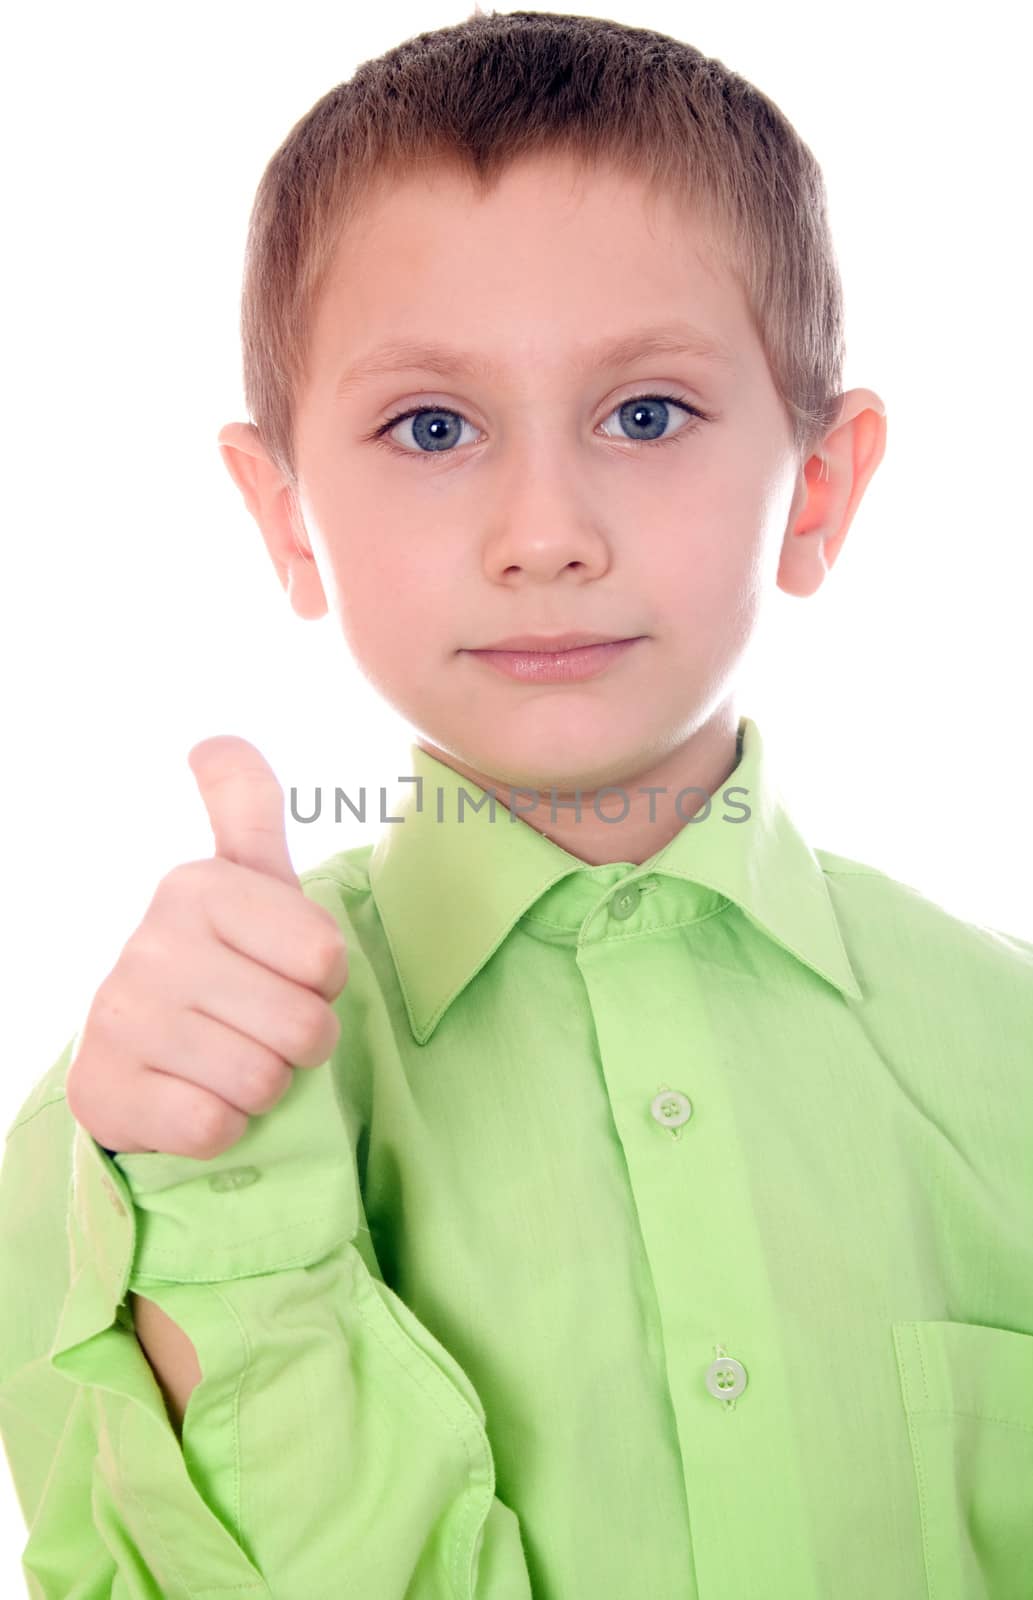 Boy isolated on white background showing ok